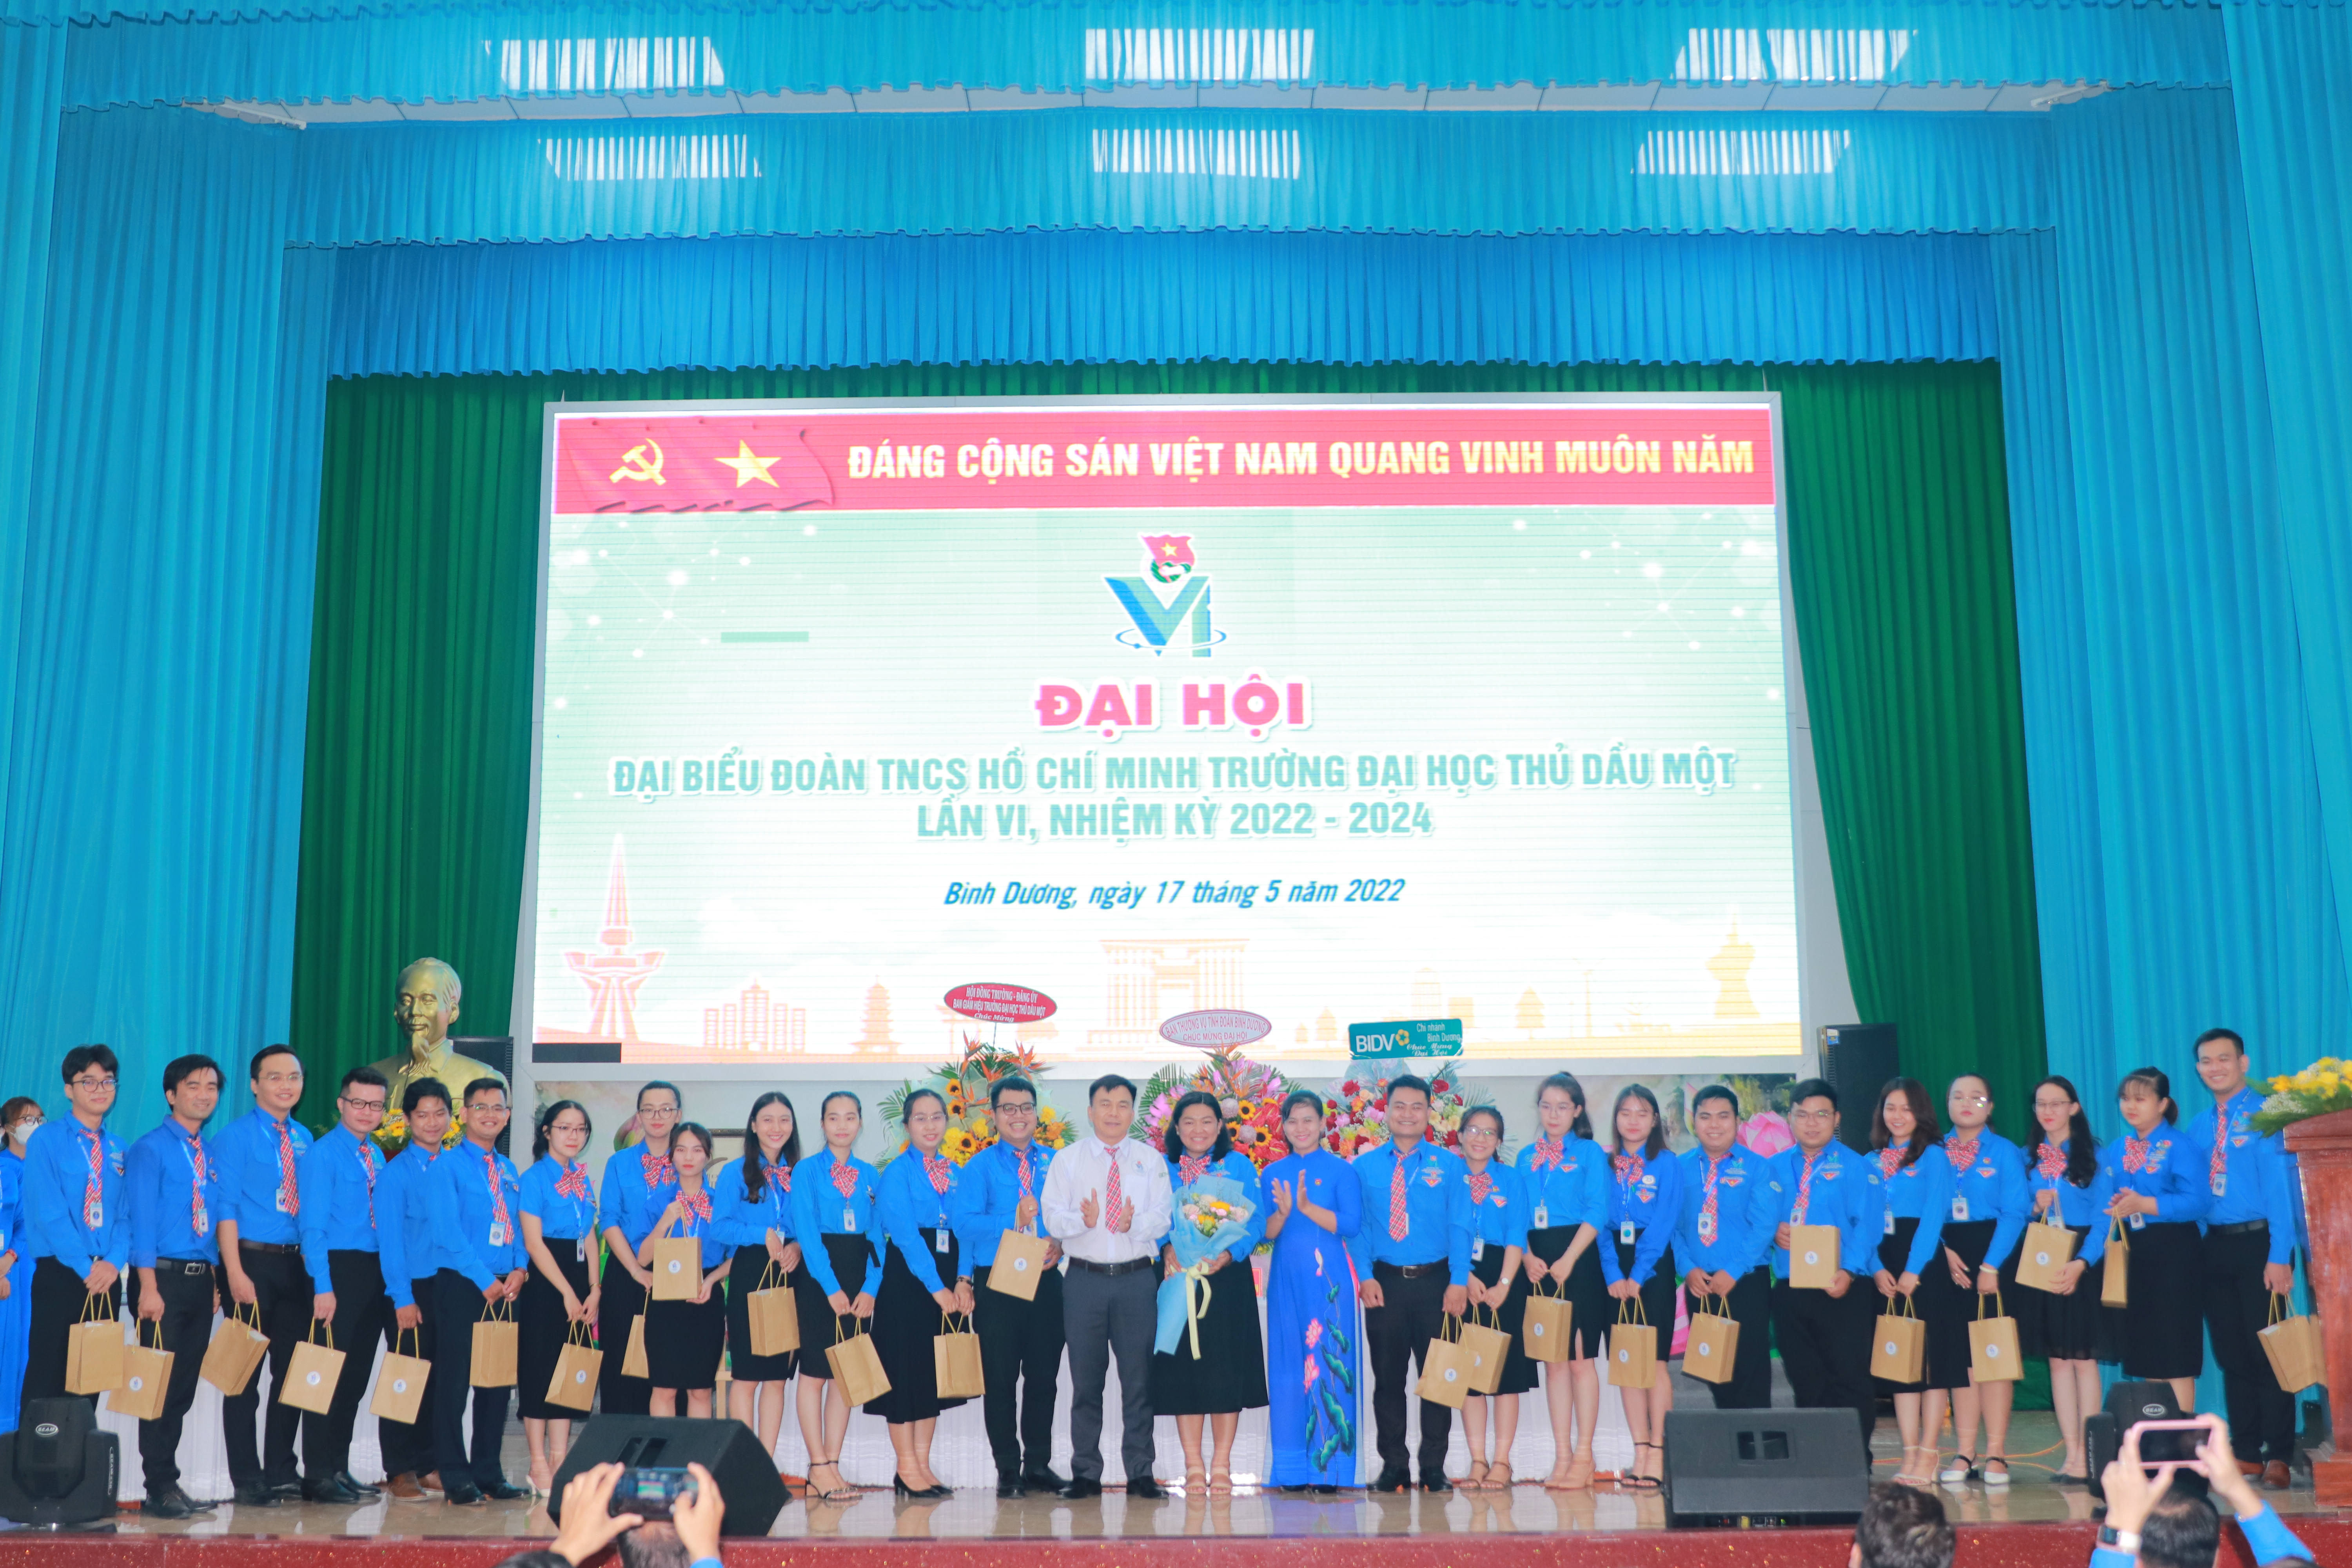 Đại hội Đại biểu Đoàn TNCS Hồ Chí Minh Trường Đại học Thủ Dầu Một lần VI, nhiệm kỳ 2022-2024 diễn ra thành công tốt đẹp